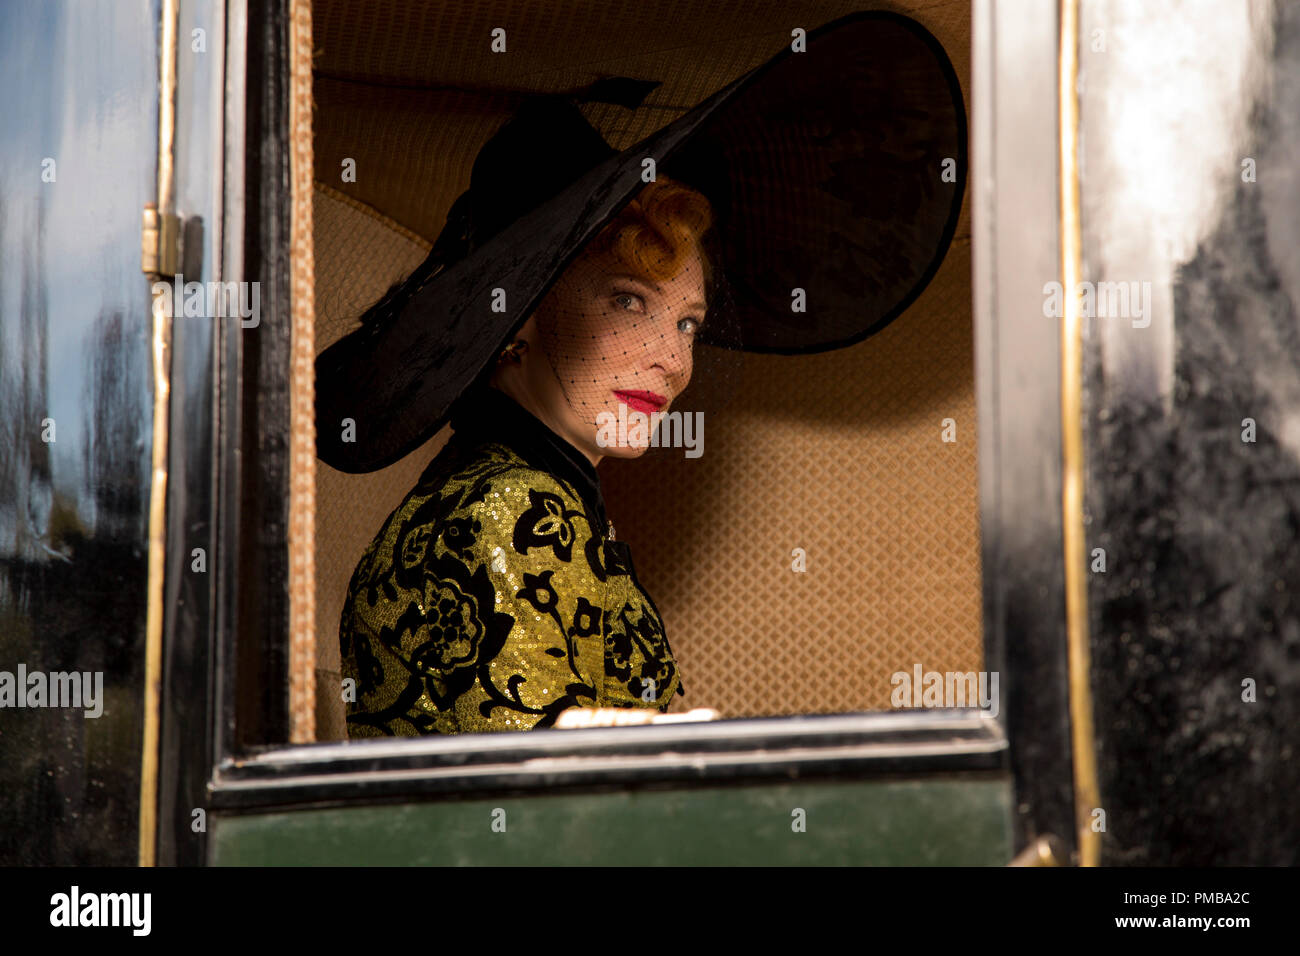 Cate Blanchett es la madrastra en Disney's live-action feature cenicienta, dirigida por Kennth Branagh. Foto de stock